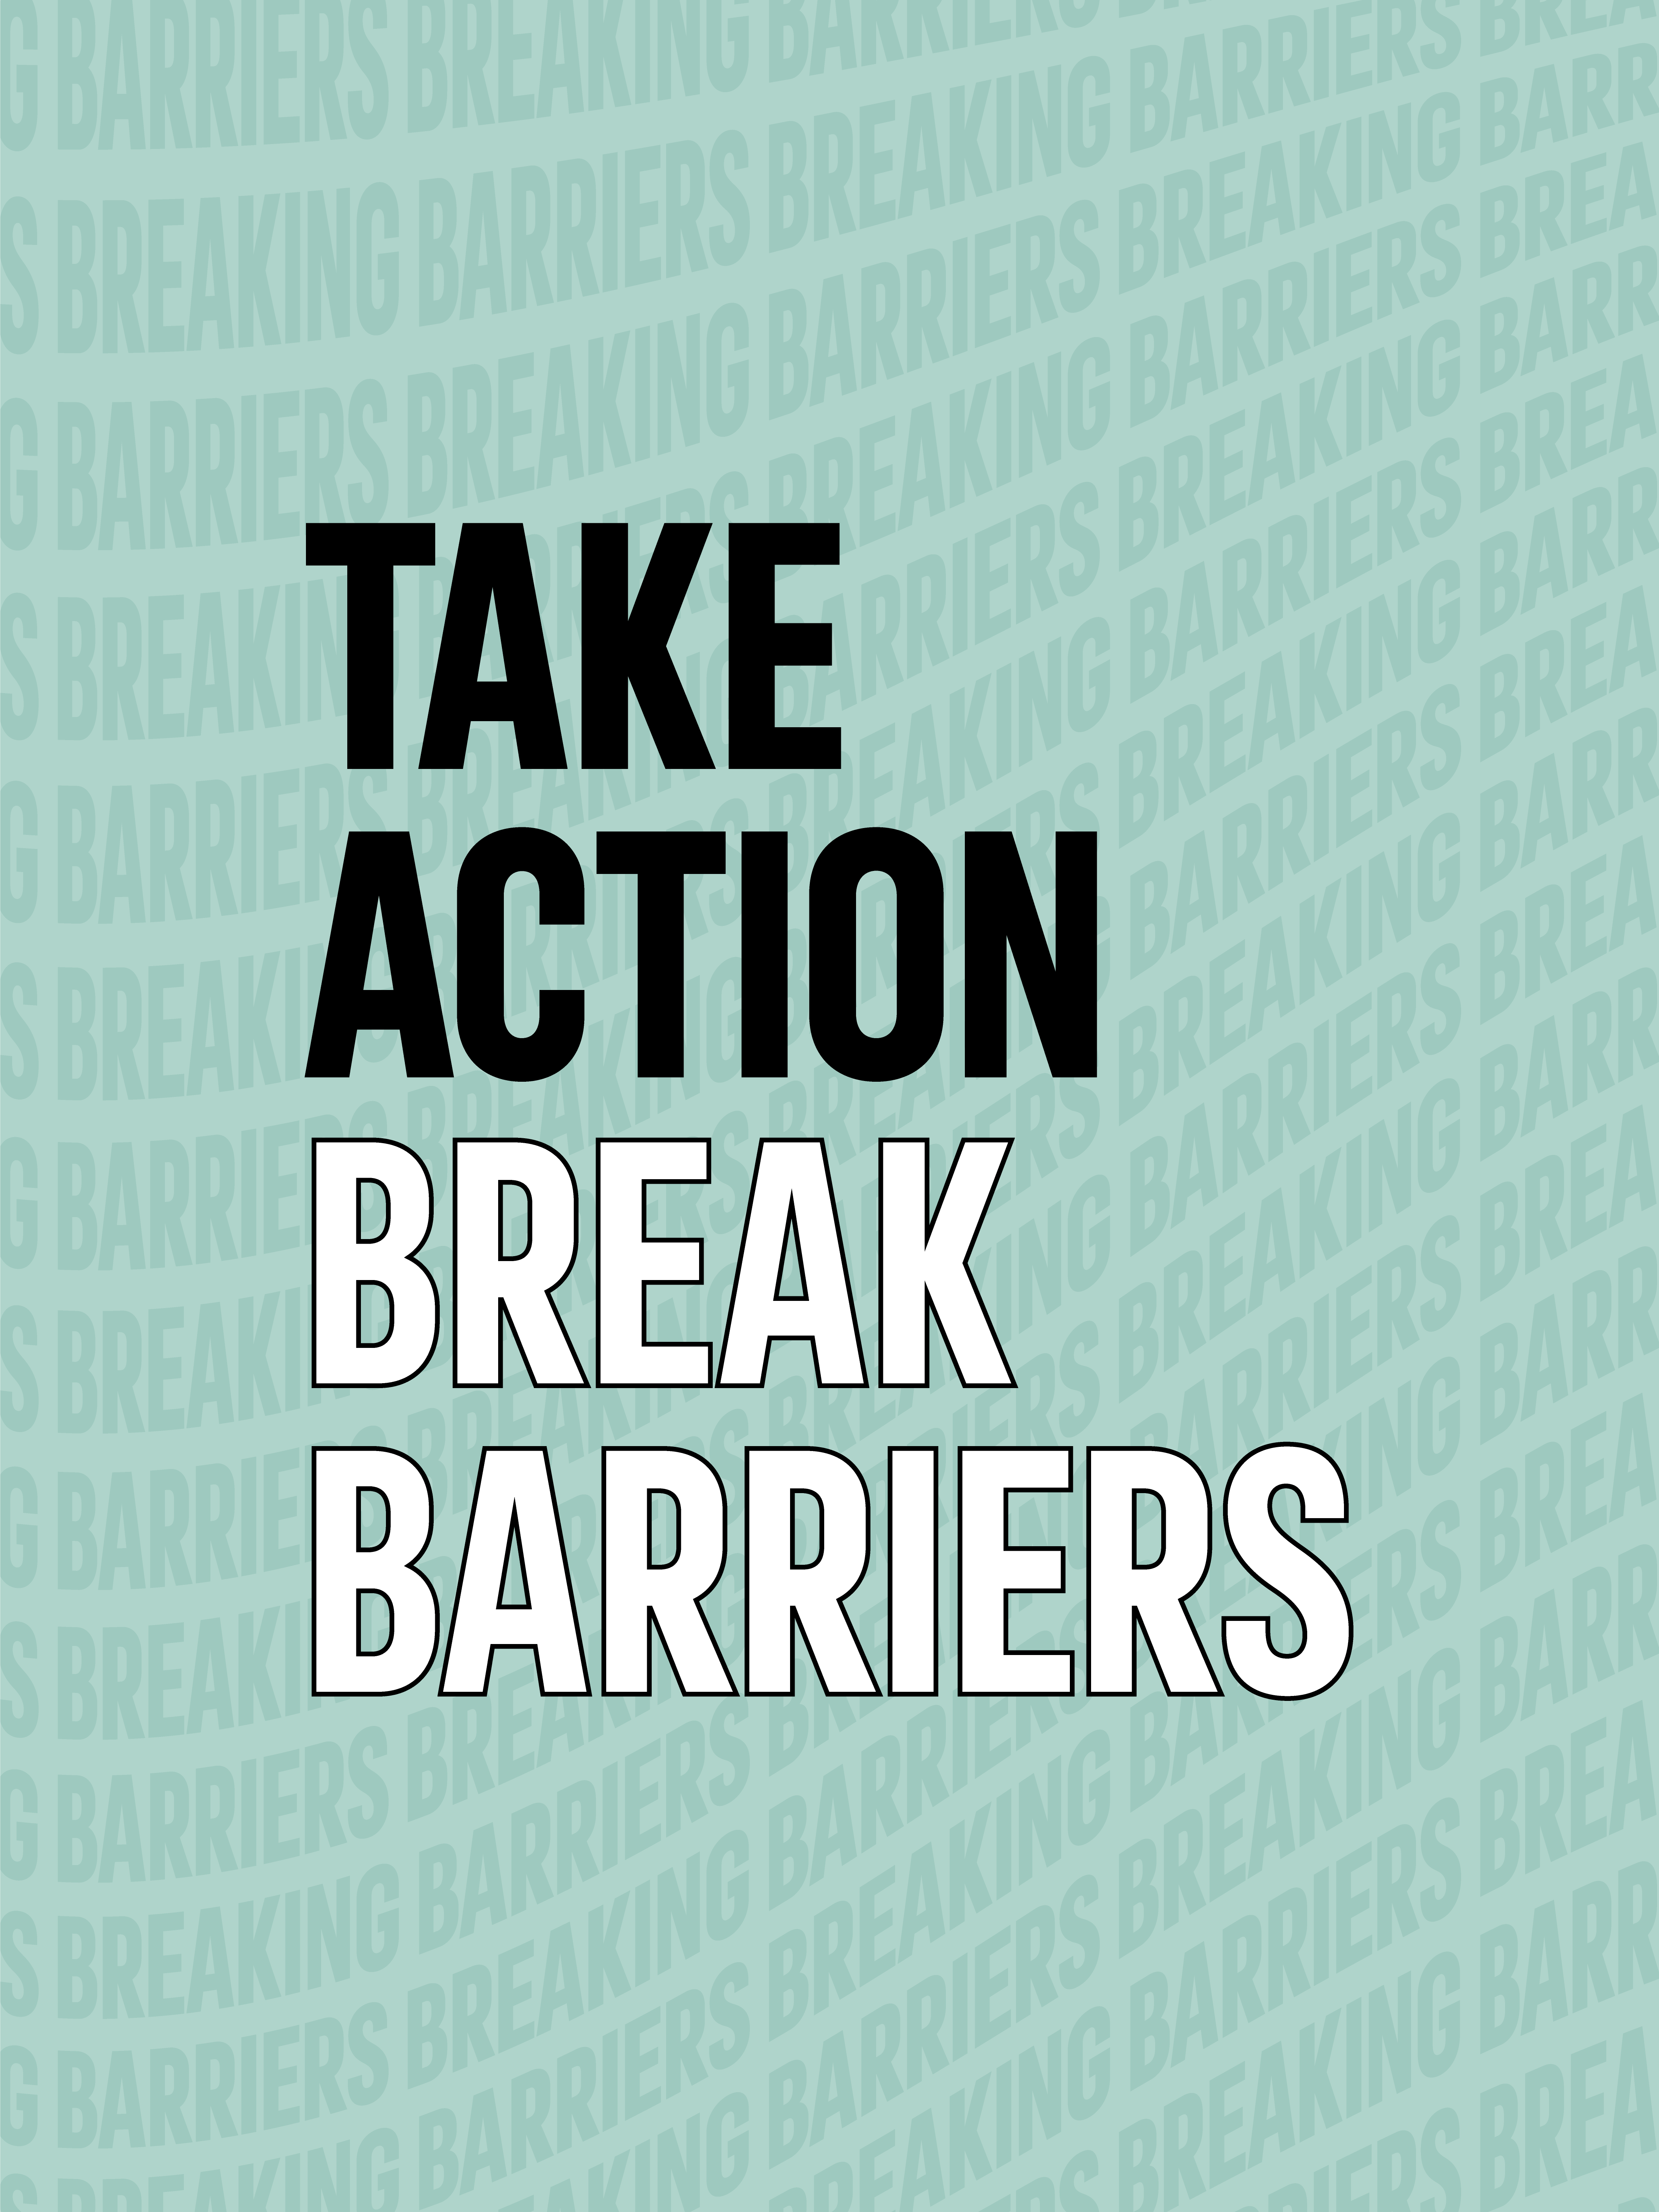 Take action. Break Barriers.